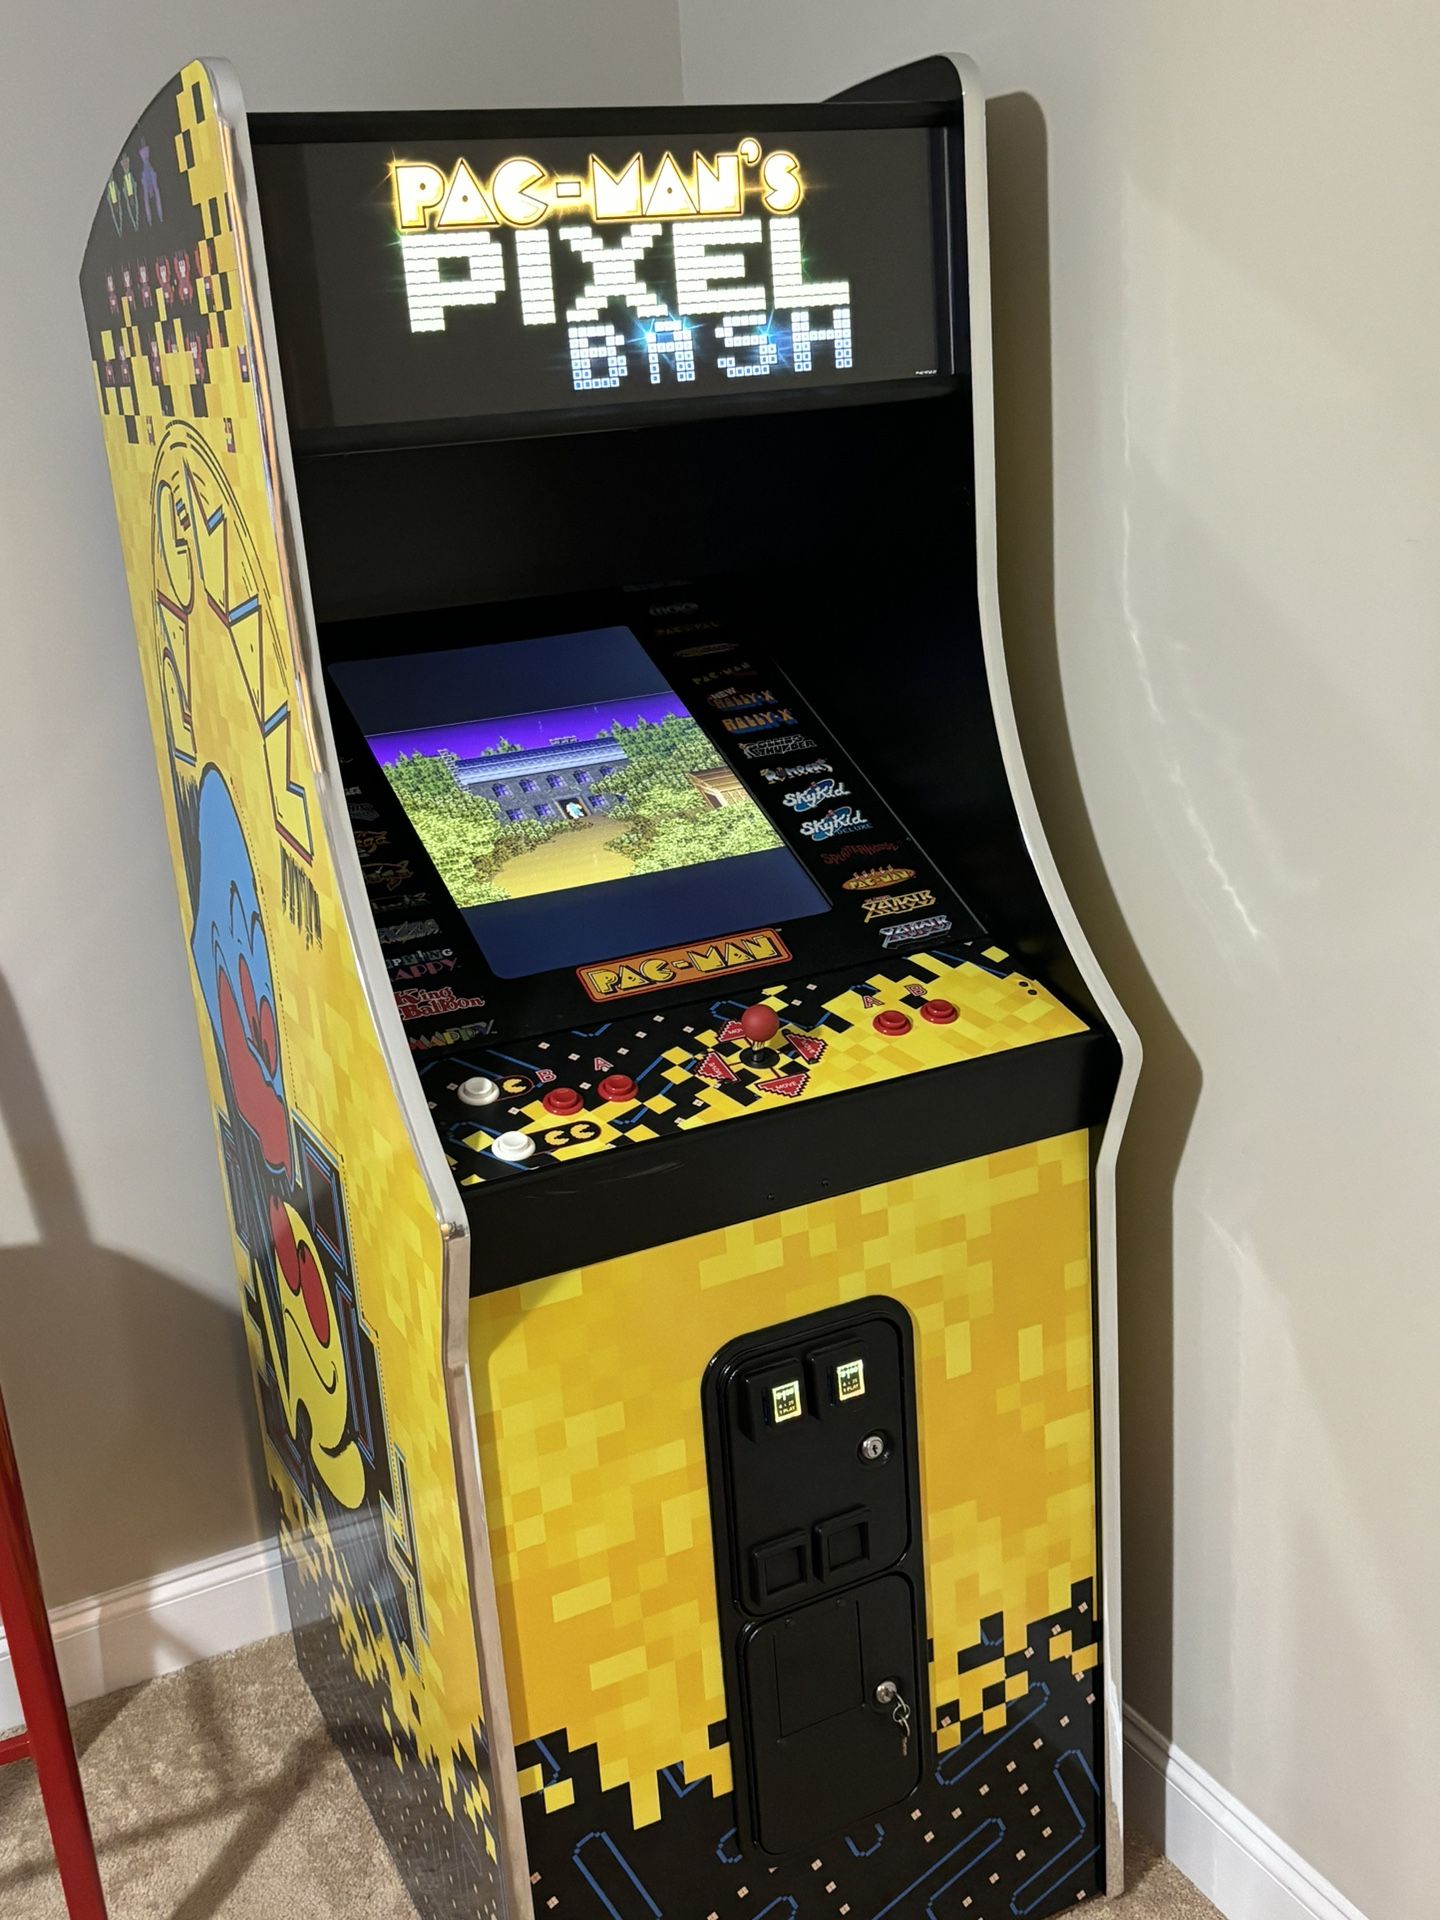 Pac Man’s Pixel Bash Arcade Game (31 games)